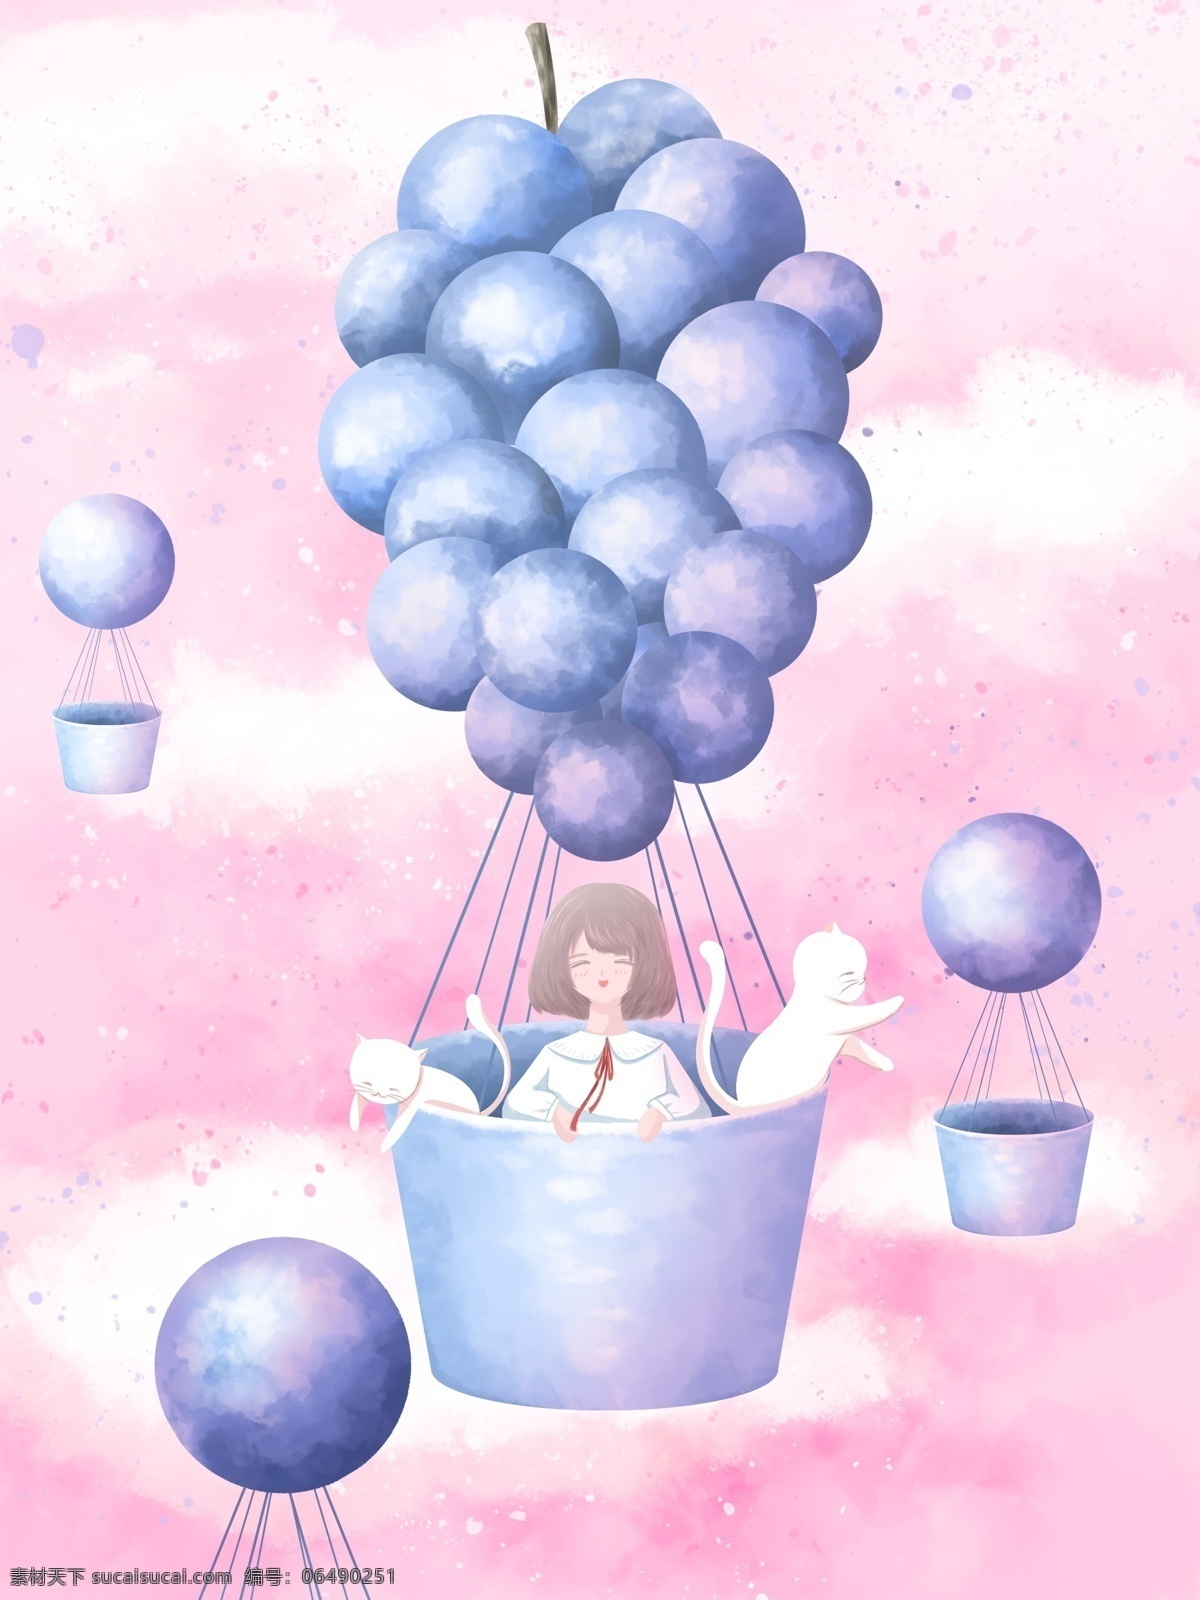 创意 水果 插画 葡萄 热气球 上 女孩 猫 气球 云 天空 清新 创意水果 粉色 水彩 壁纸 背景